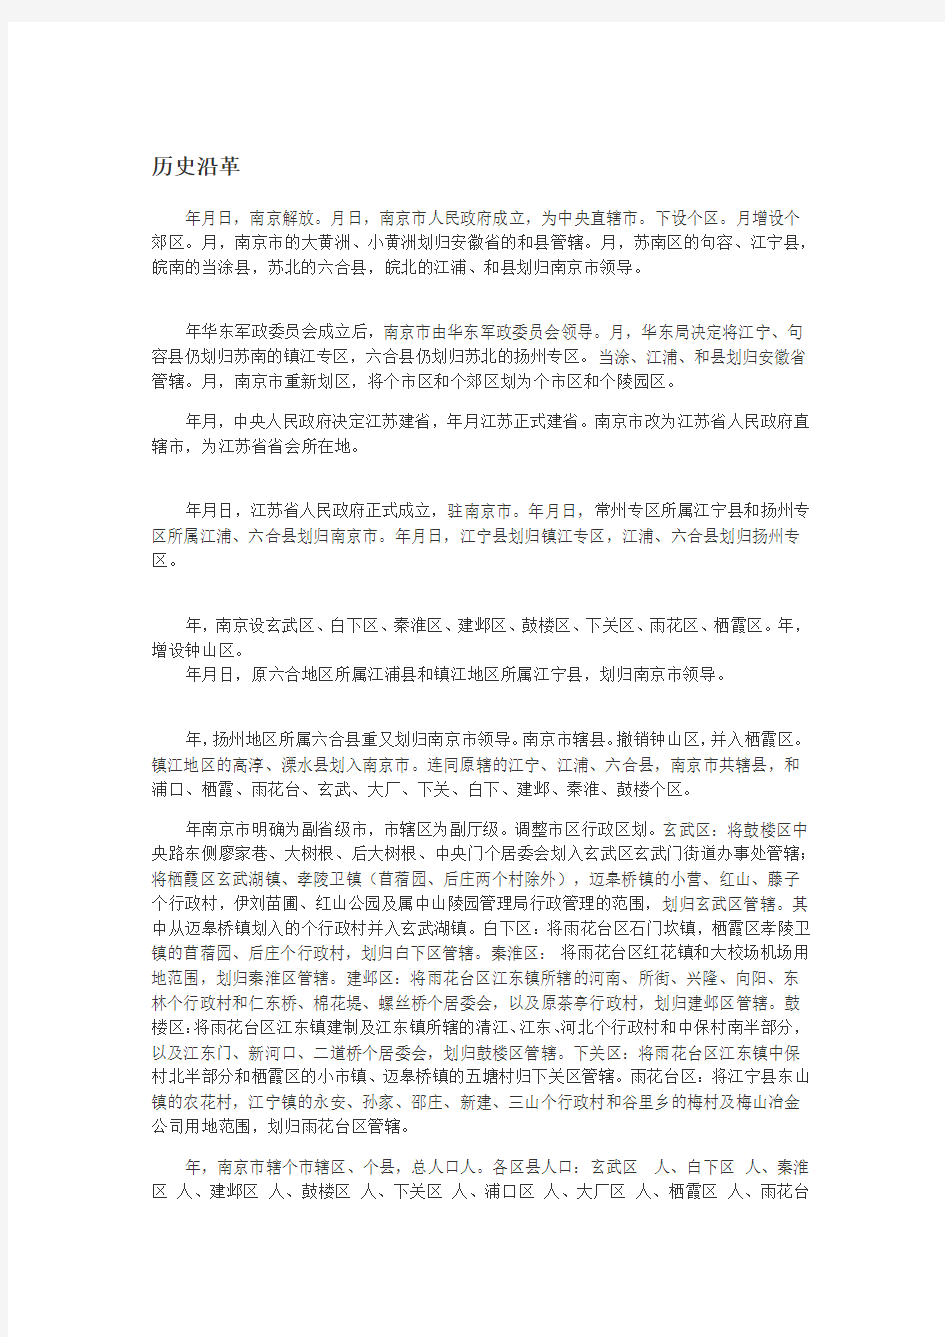 南京市行政区划及历史沿革